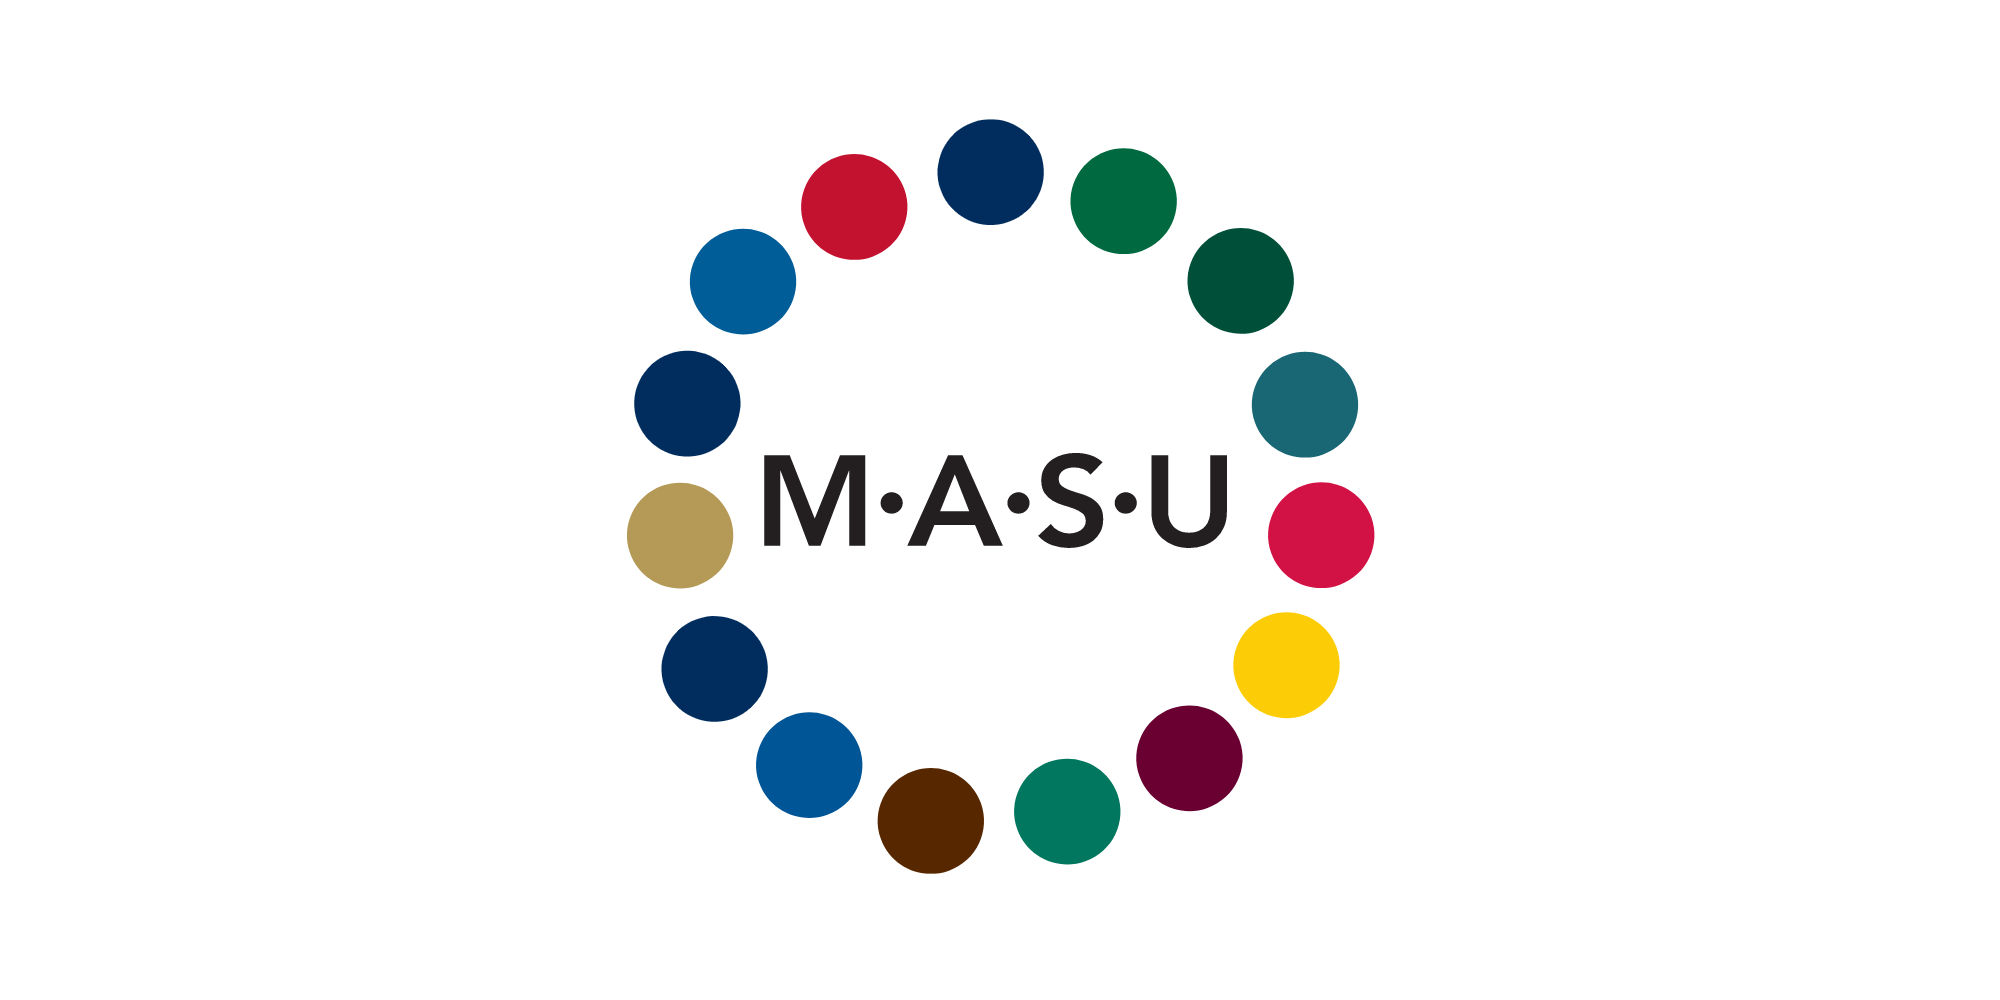 MASU logo